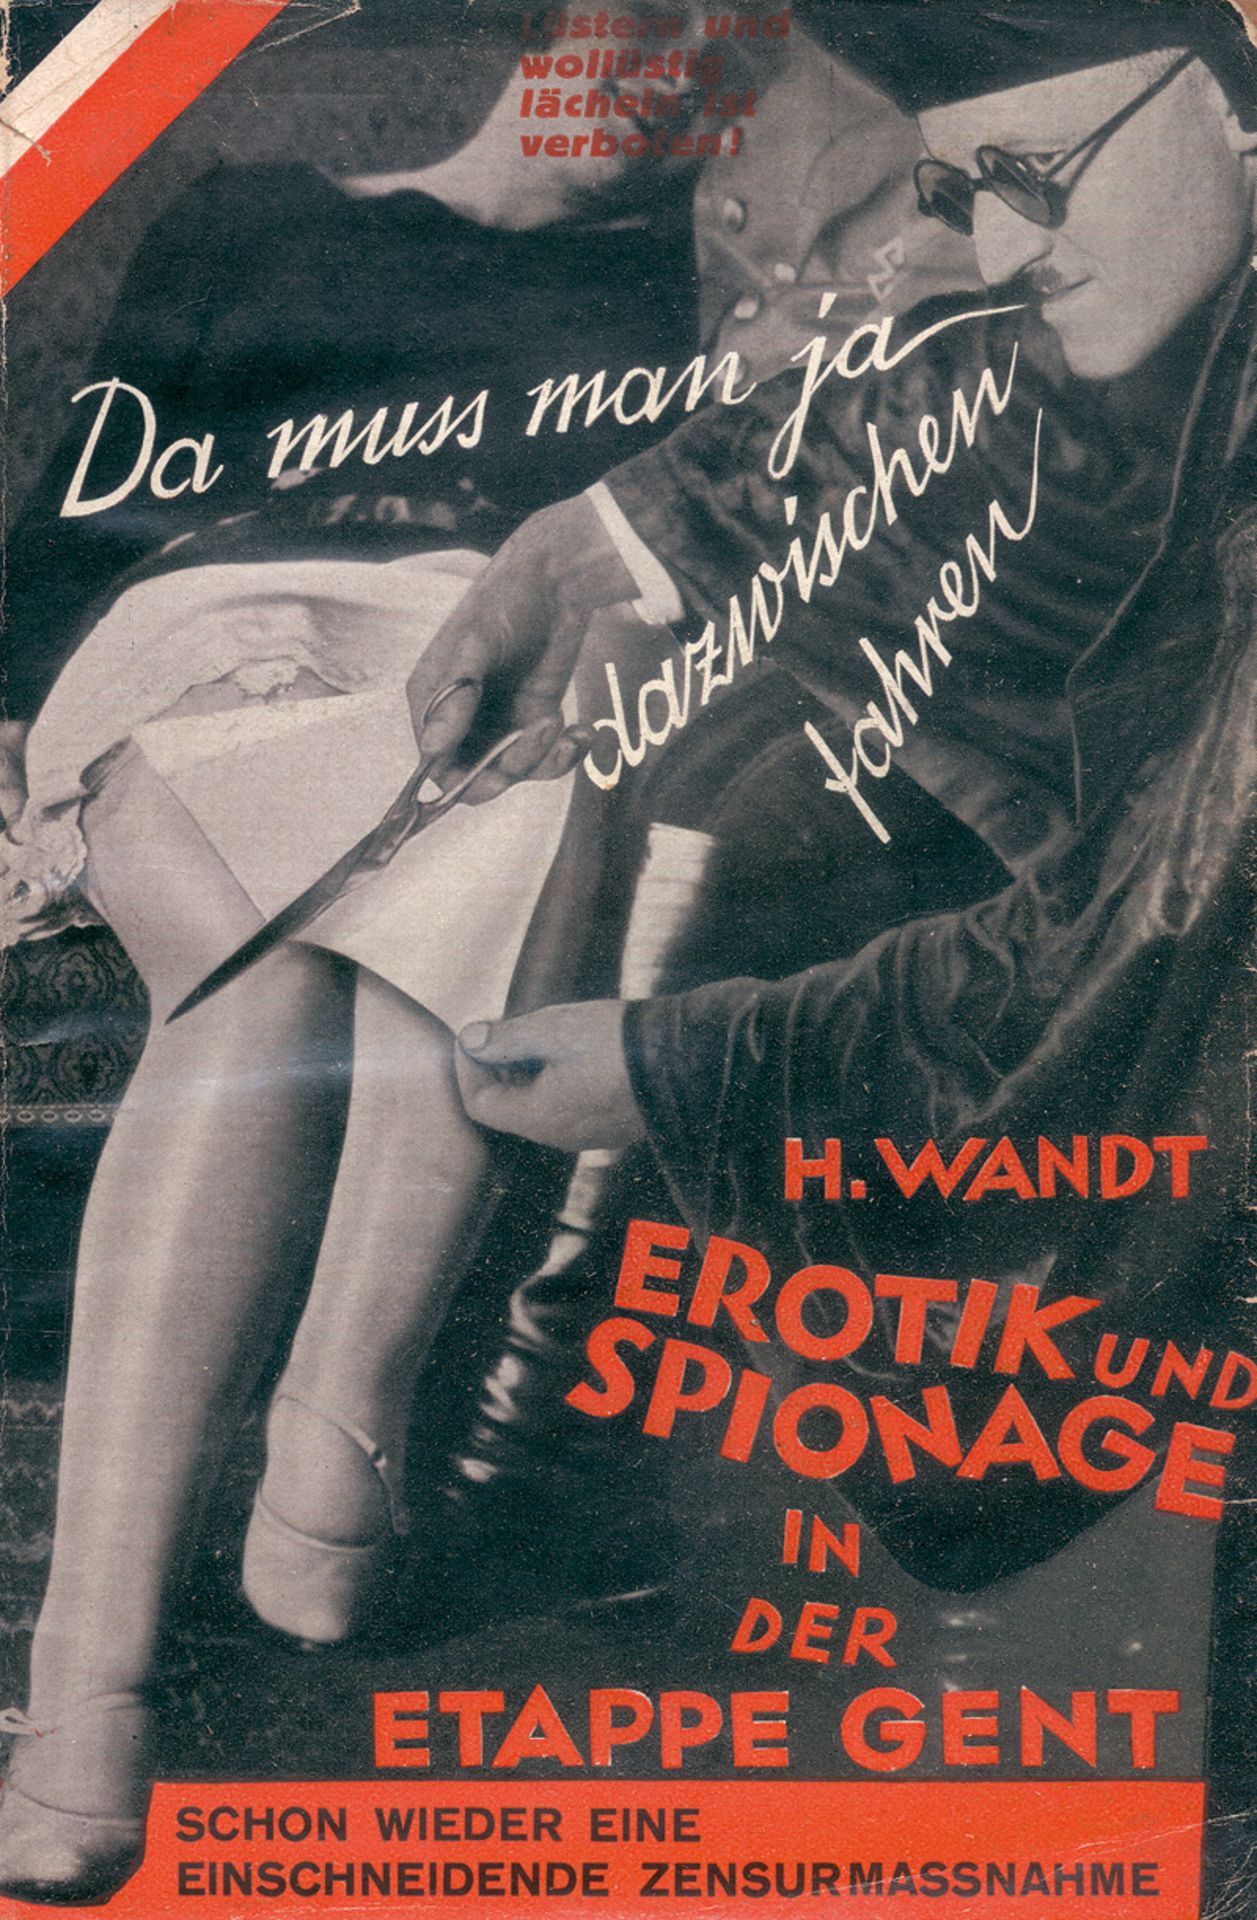 Wandt, Heinrich und Heartfield, Joh...: Erotik und Spionage in der Etappe Gent - Image 2 of 3